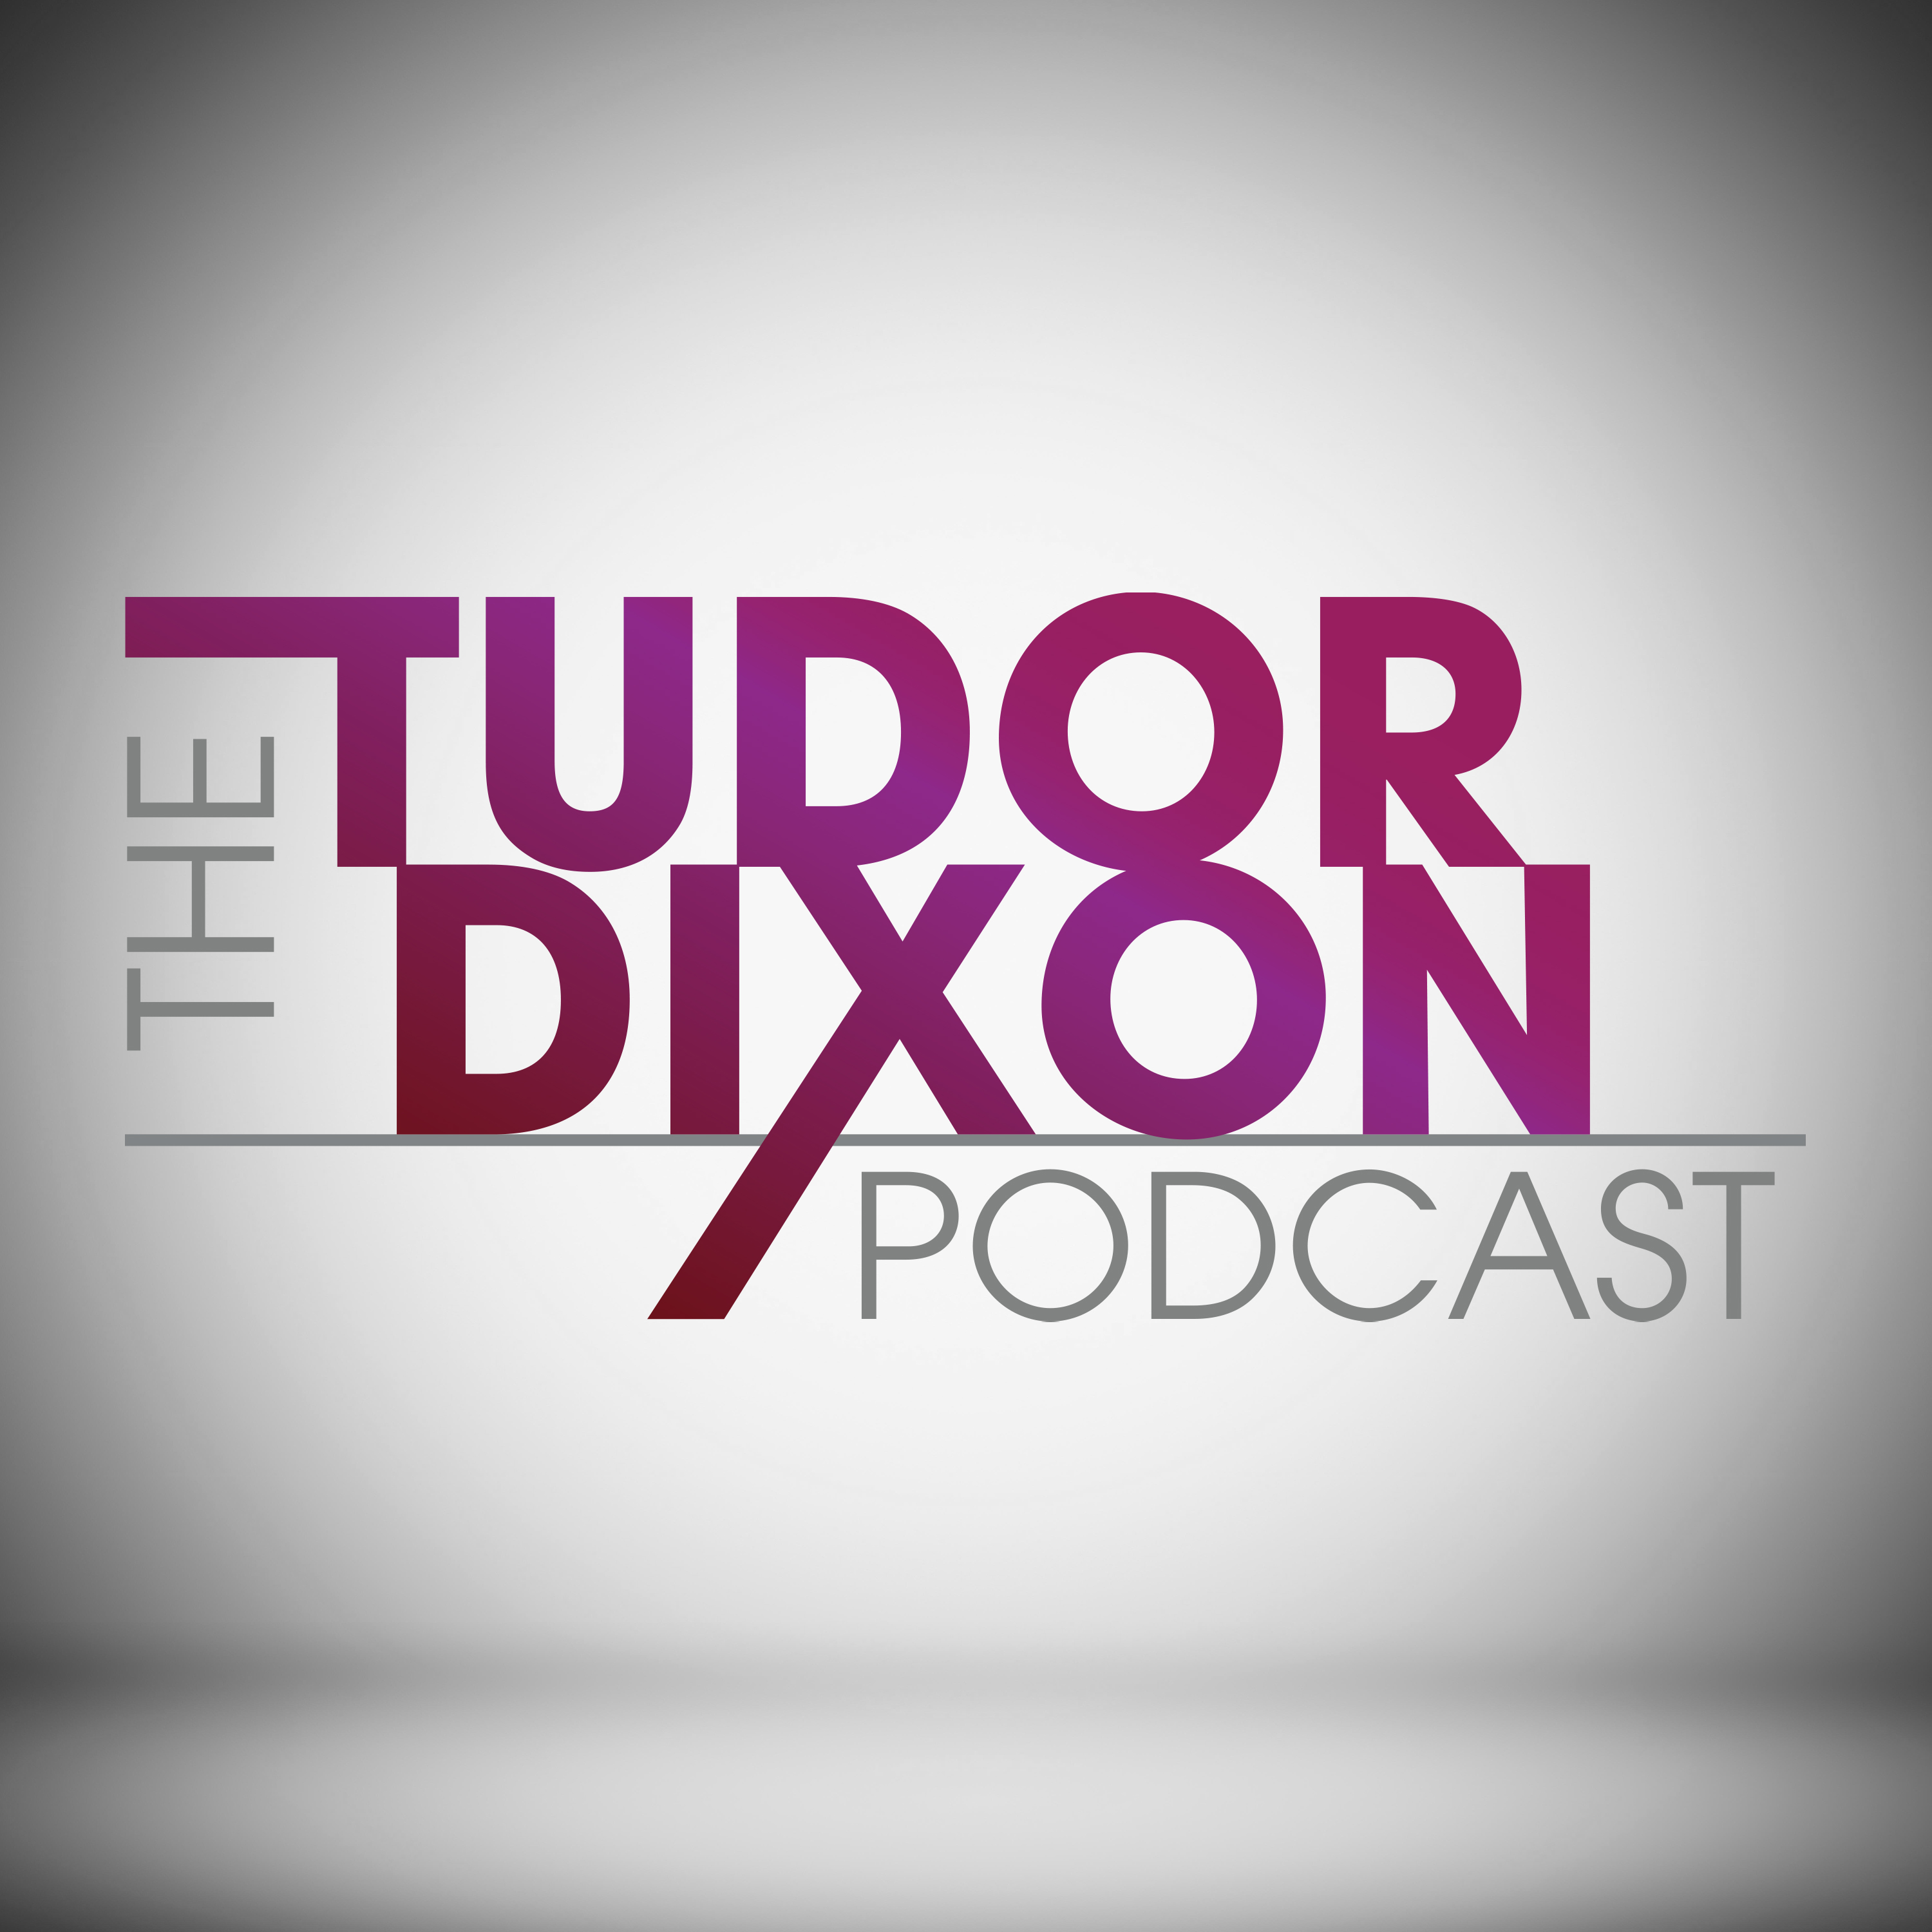 The Tudor Dixon Podcast: Corruption, Collusion, and Cover-ups with Senator Ron Johnson